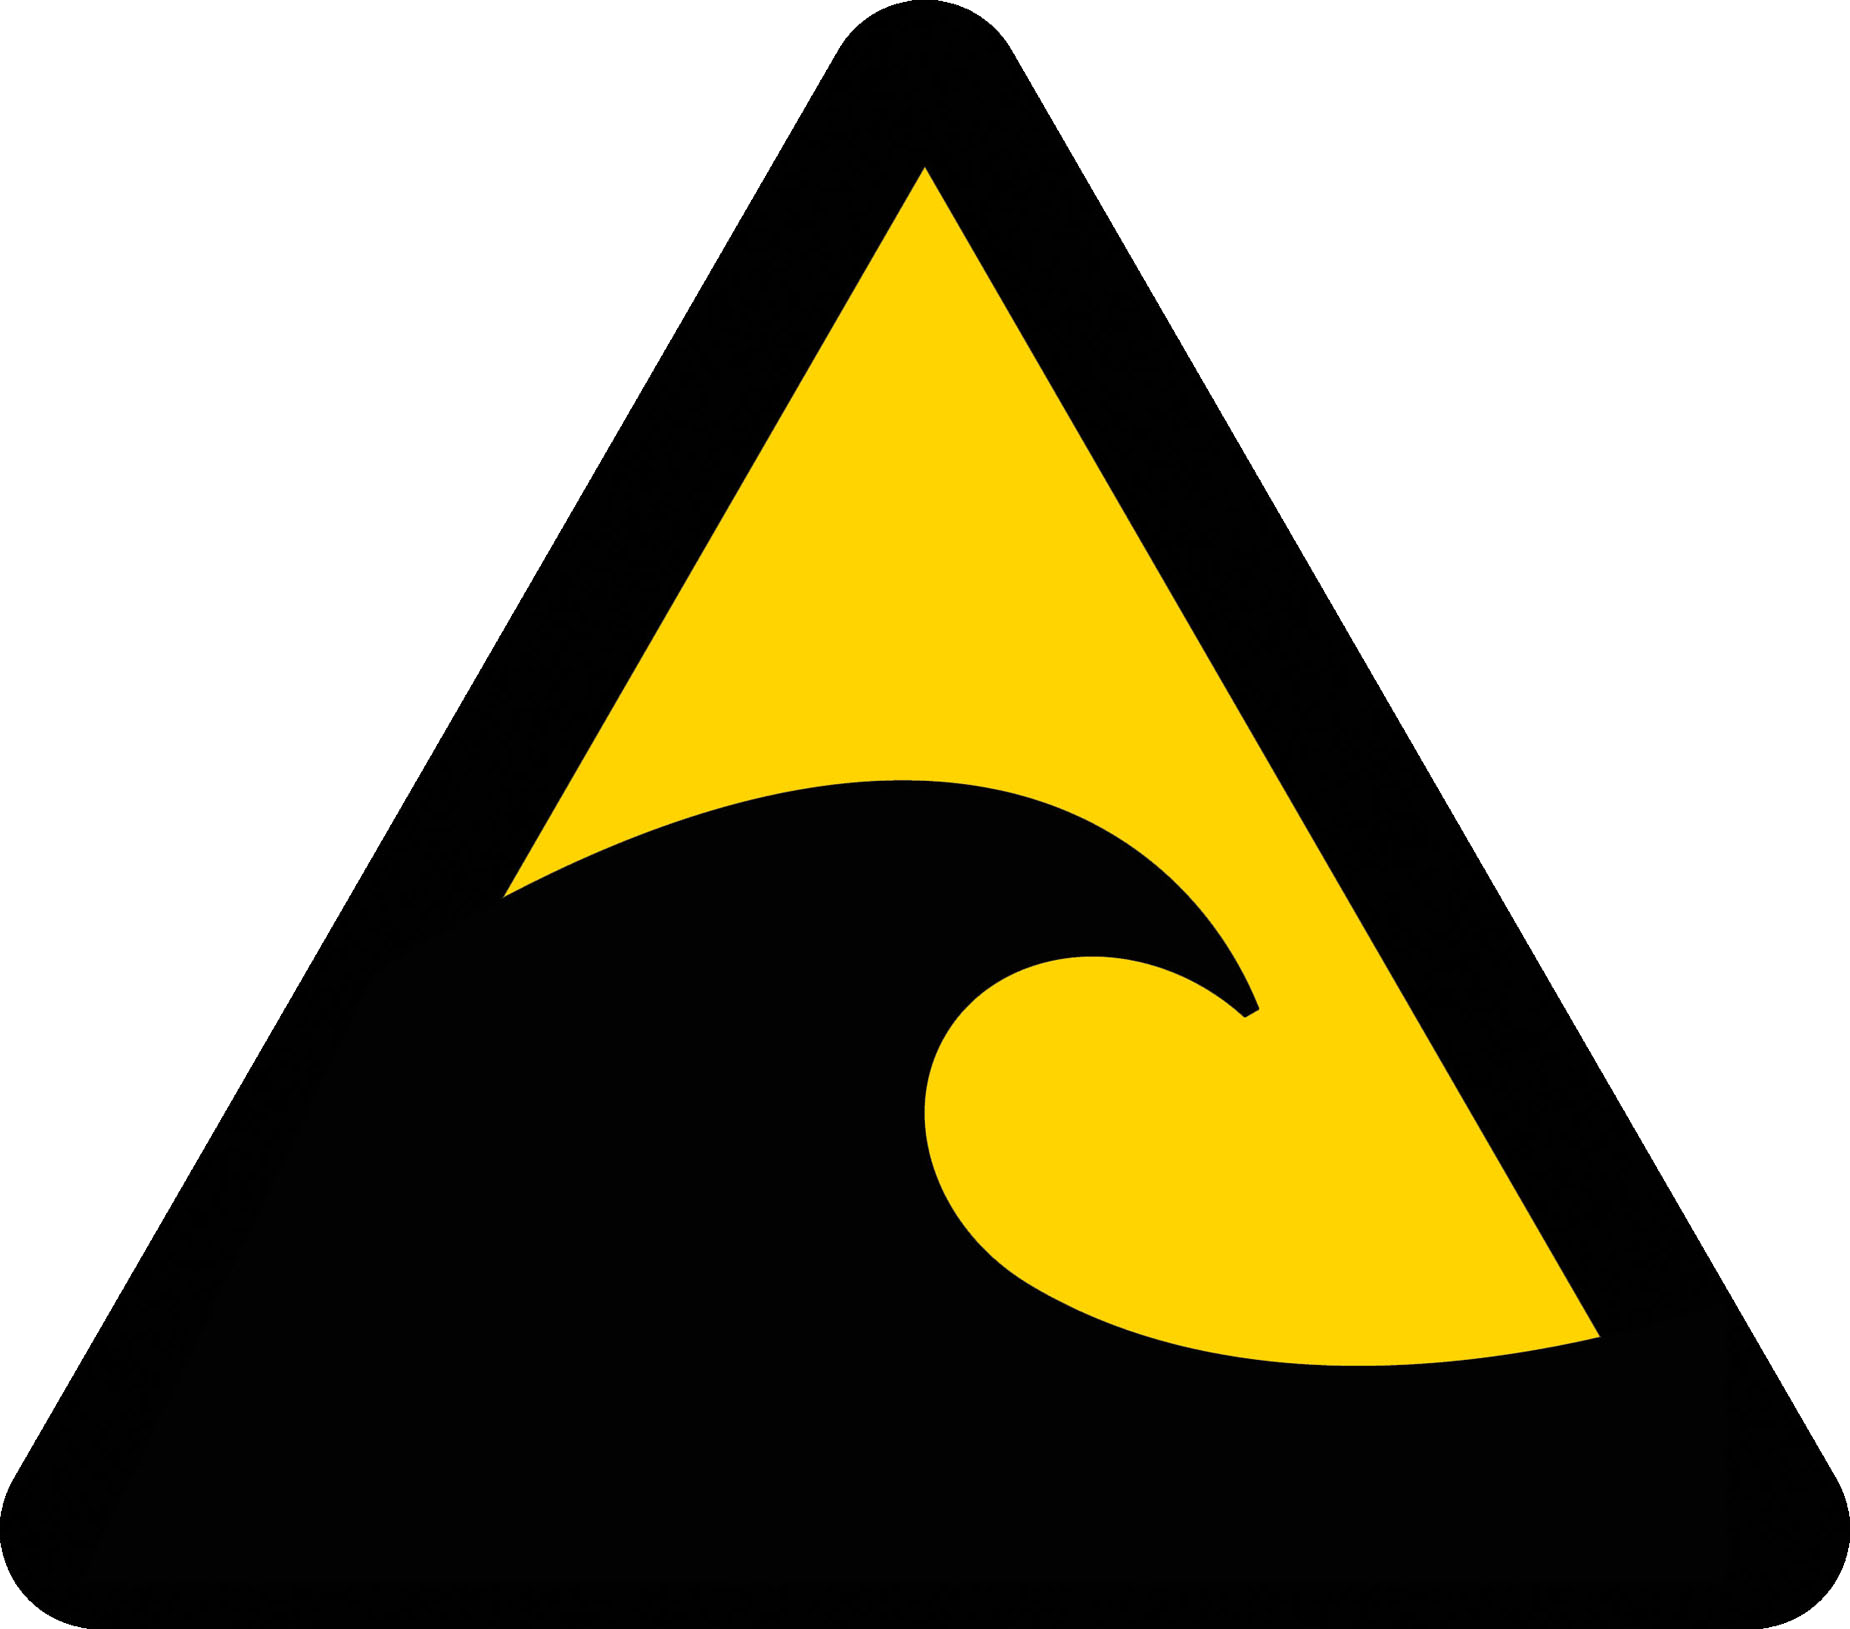 Tsunami Warning Sign Graphic PNG image